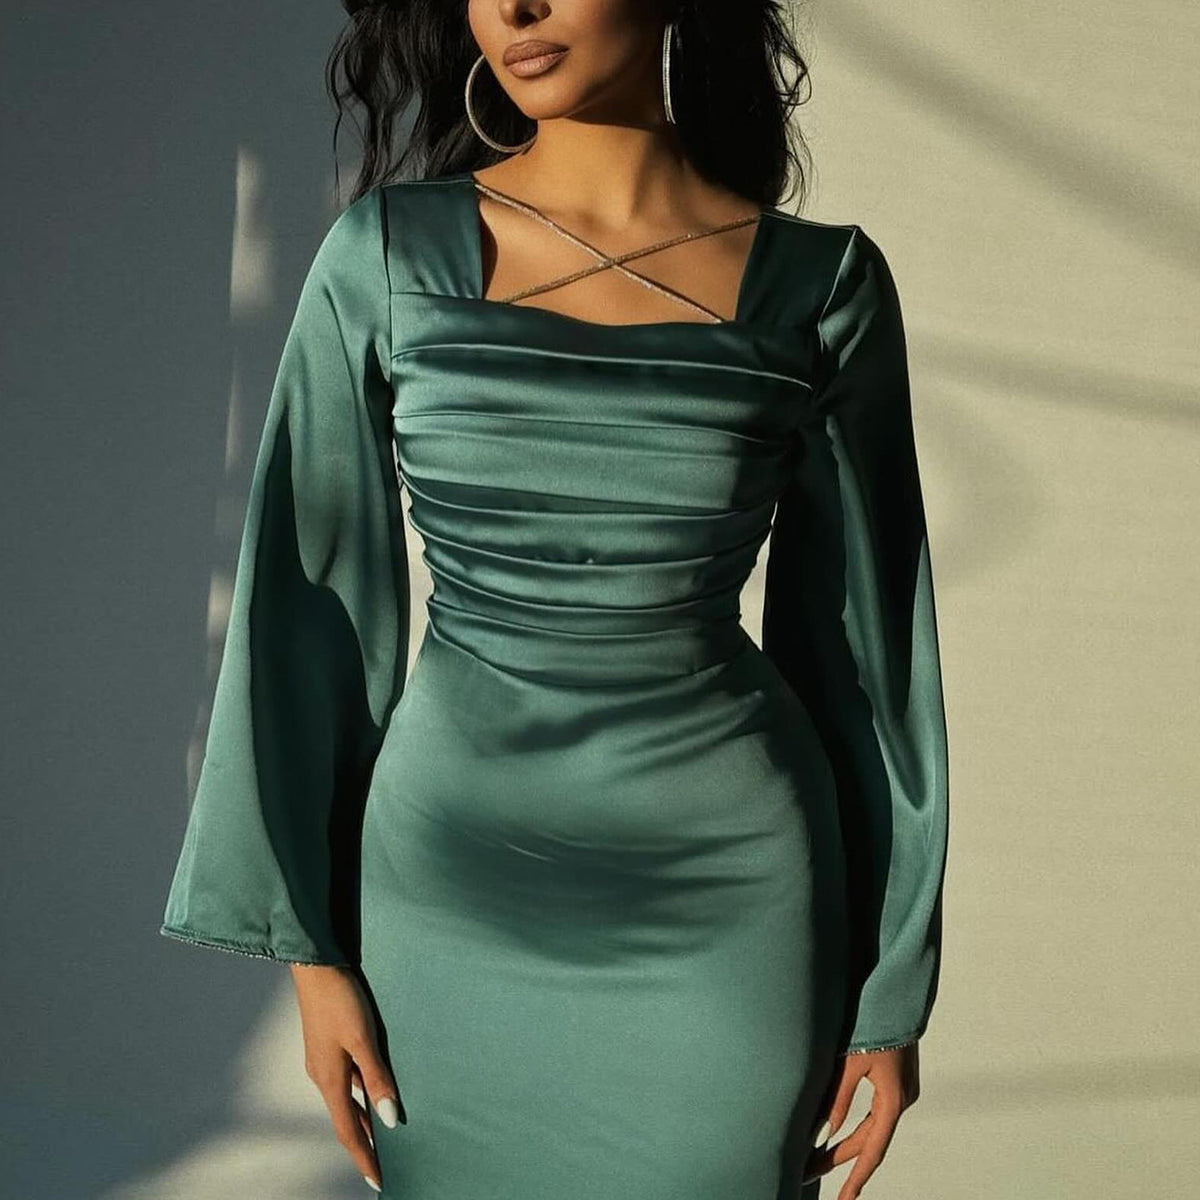 Sharon Said Smaragdgrünes, kurzes, arabisches Abendkleid mit langen Ärmeln, Schwarz-Weiß, Midi-Kleid für formelle Hochzeiten, Partys, Brautjungfern, SF028